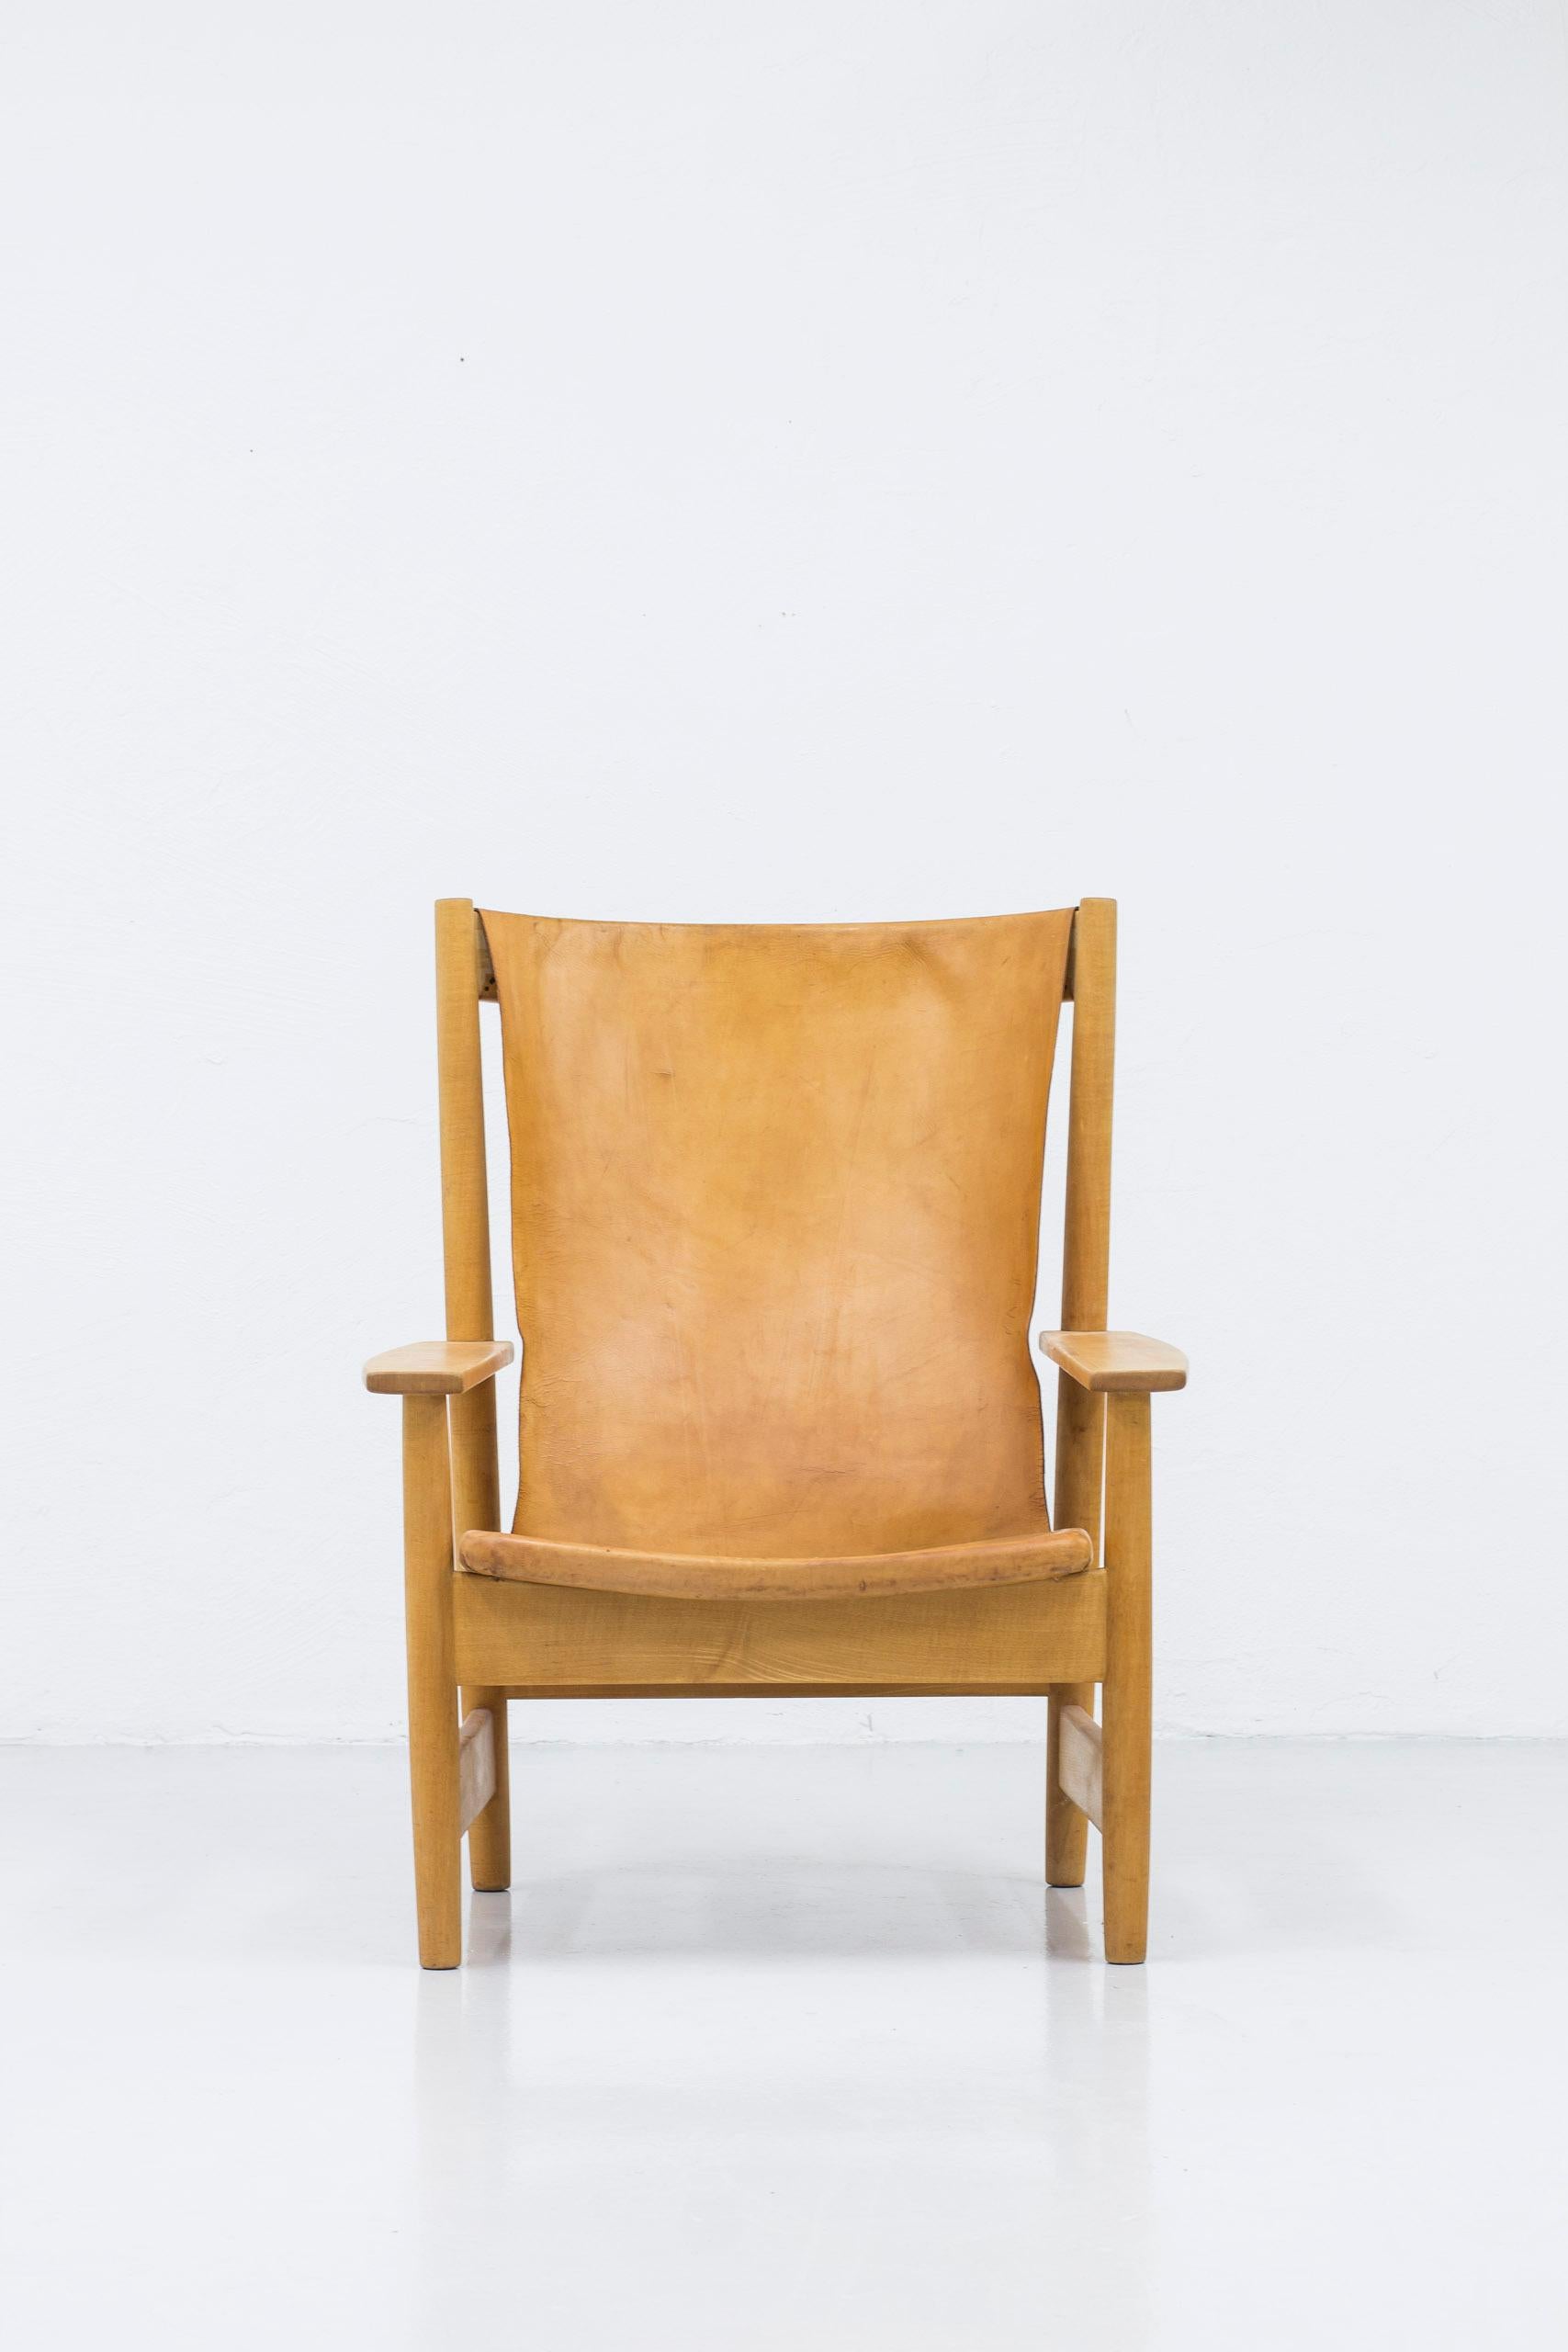 Grand et puissant fauteuil de salon à haut dossier de l'ère moderne suédoise. Fabriqué en bois de hêtre massif avec du cuir naturel qui a vieilli en une belle couleur cognac. Fabriqué en Suède dans les années 1950. Très bon état vintage avec usure